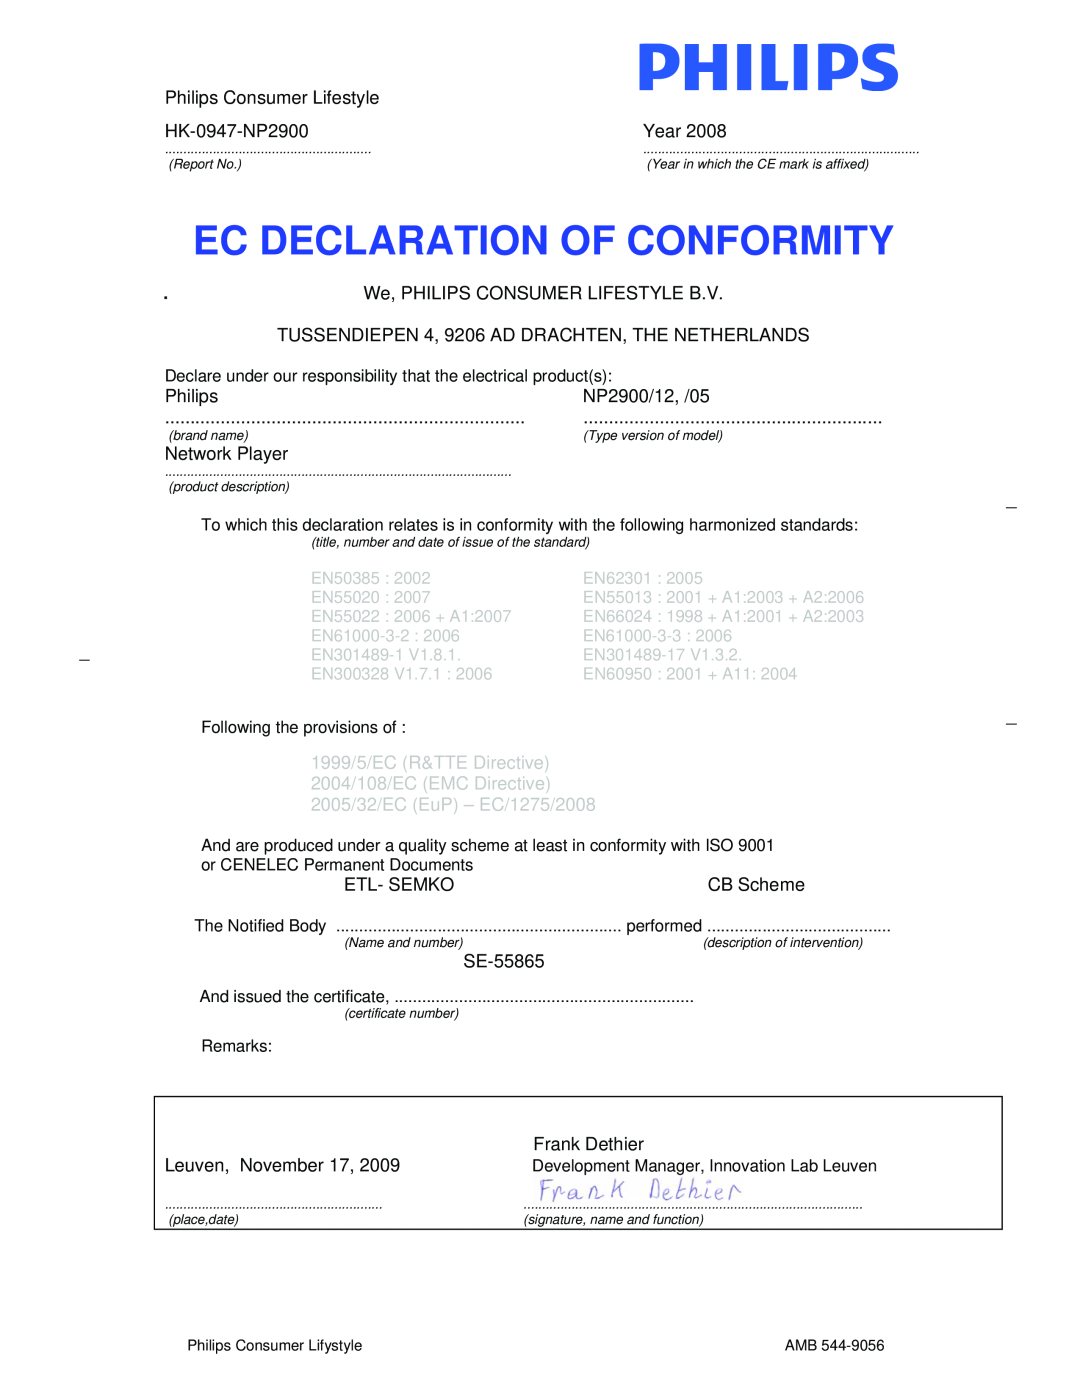 Philips NP2900 user manual Ec Declaration Of Conformity, 1999/5/EC R&TTE Directive, 2004/108/EC EMC Directive 